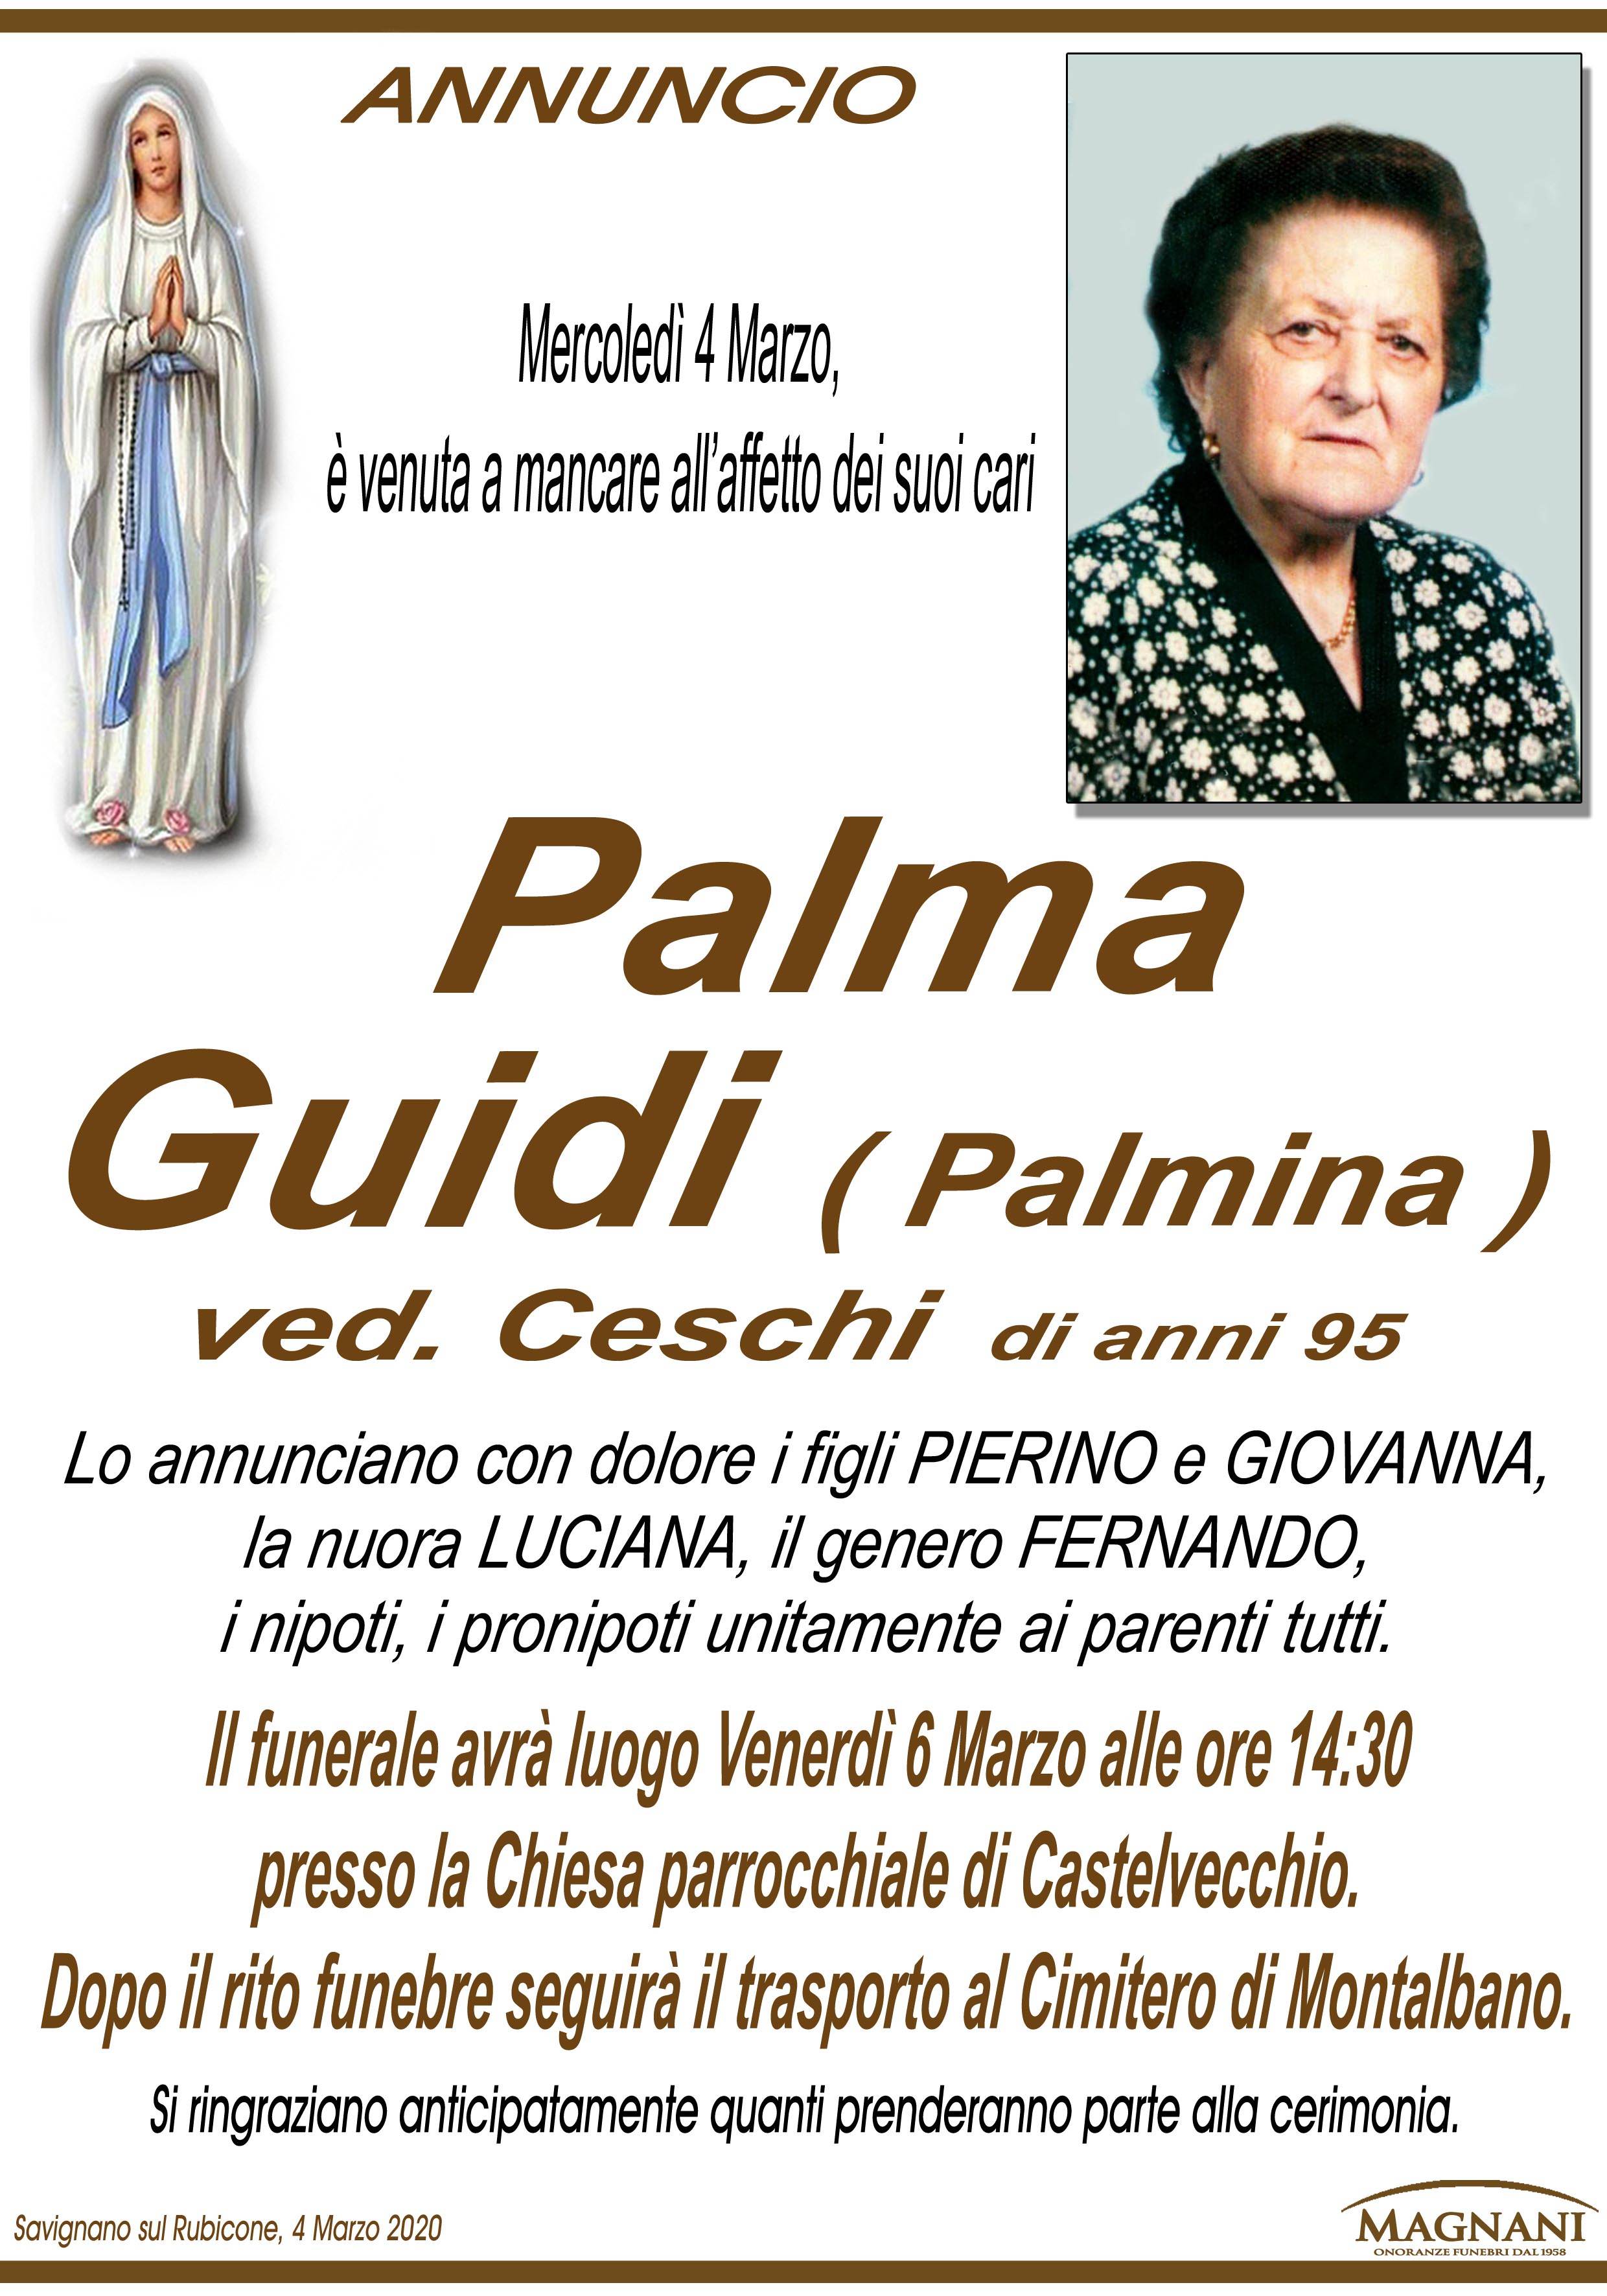 Palma Guidi